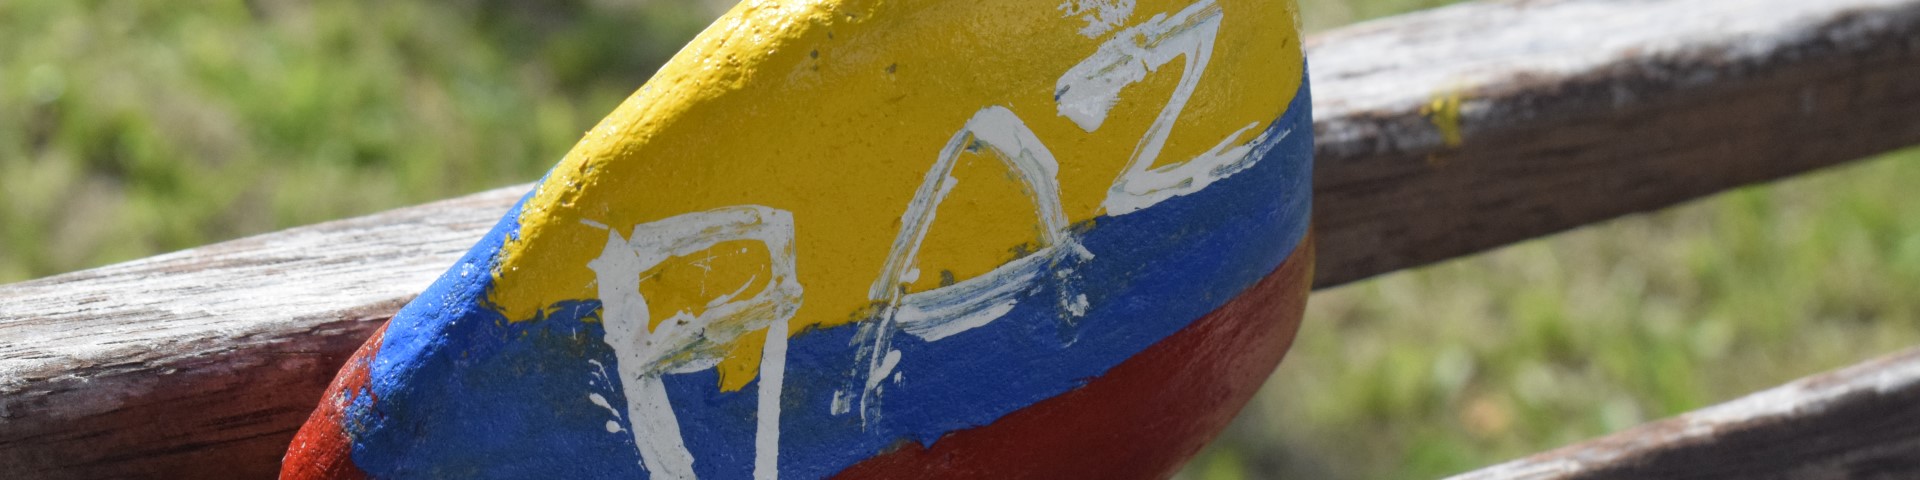 Una piedra pintada con el lema “PAZ” situada sobre el respaldo de un banco de madera.